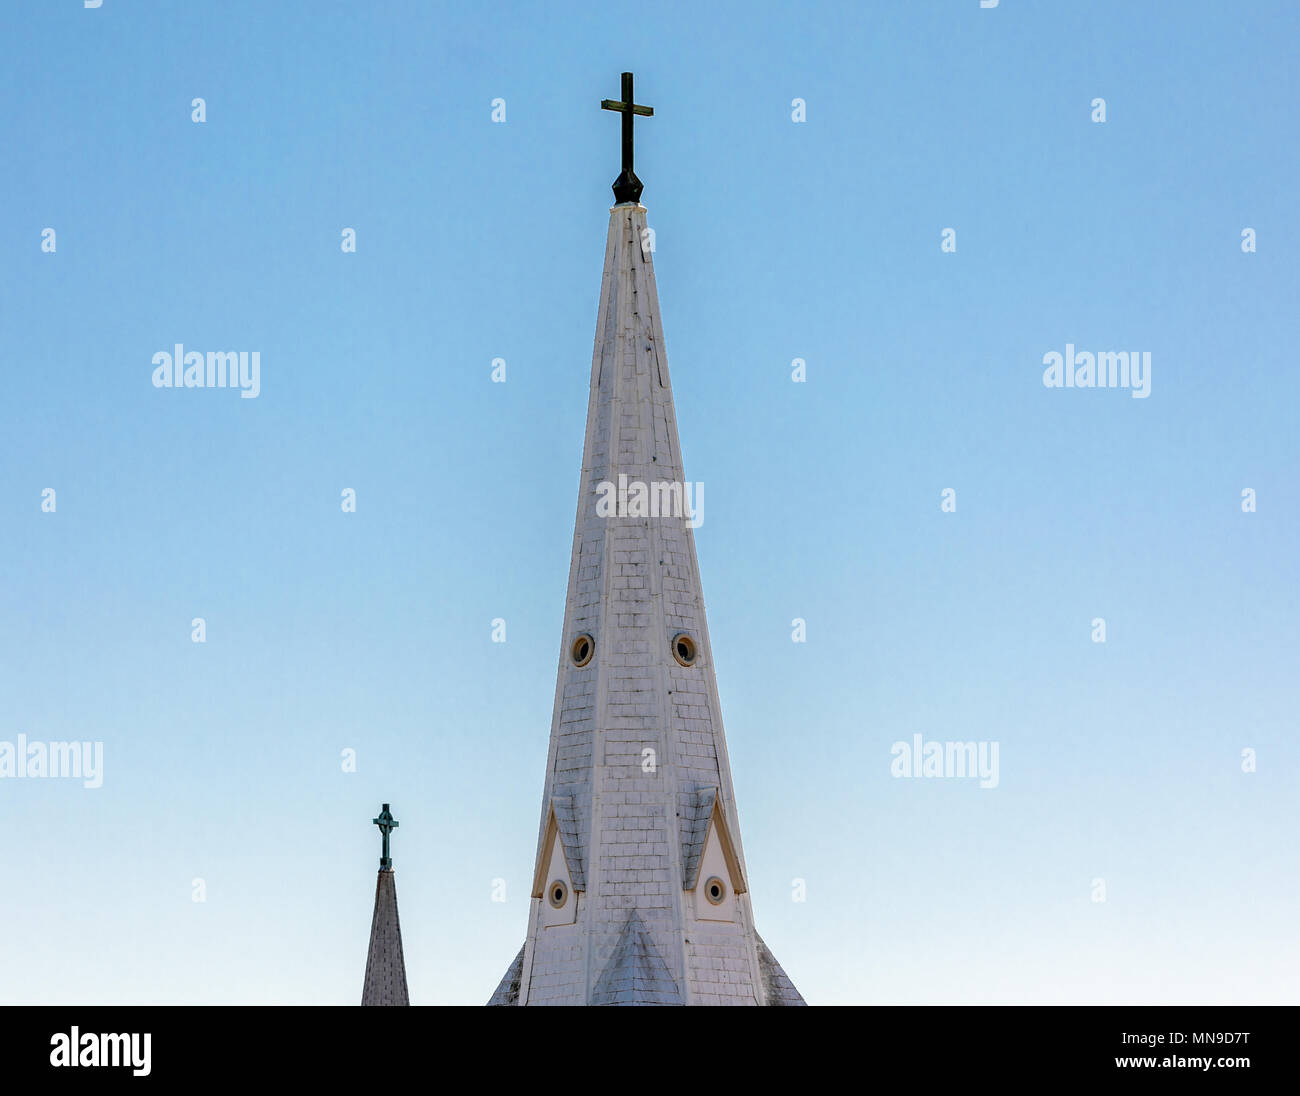 church steeples in ssg harbor, ny Stock Photo